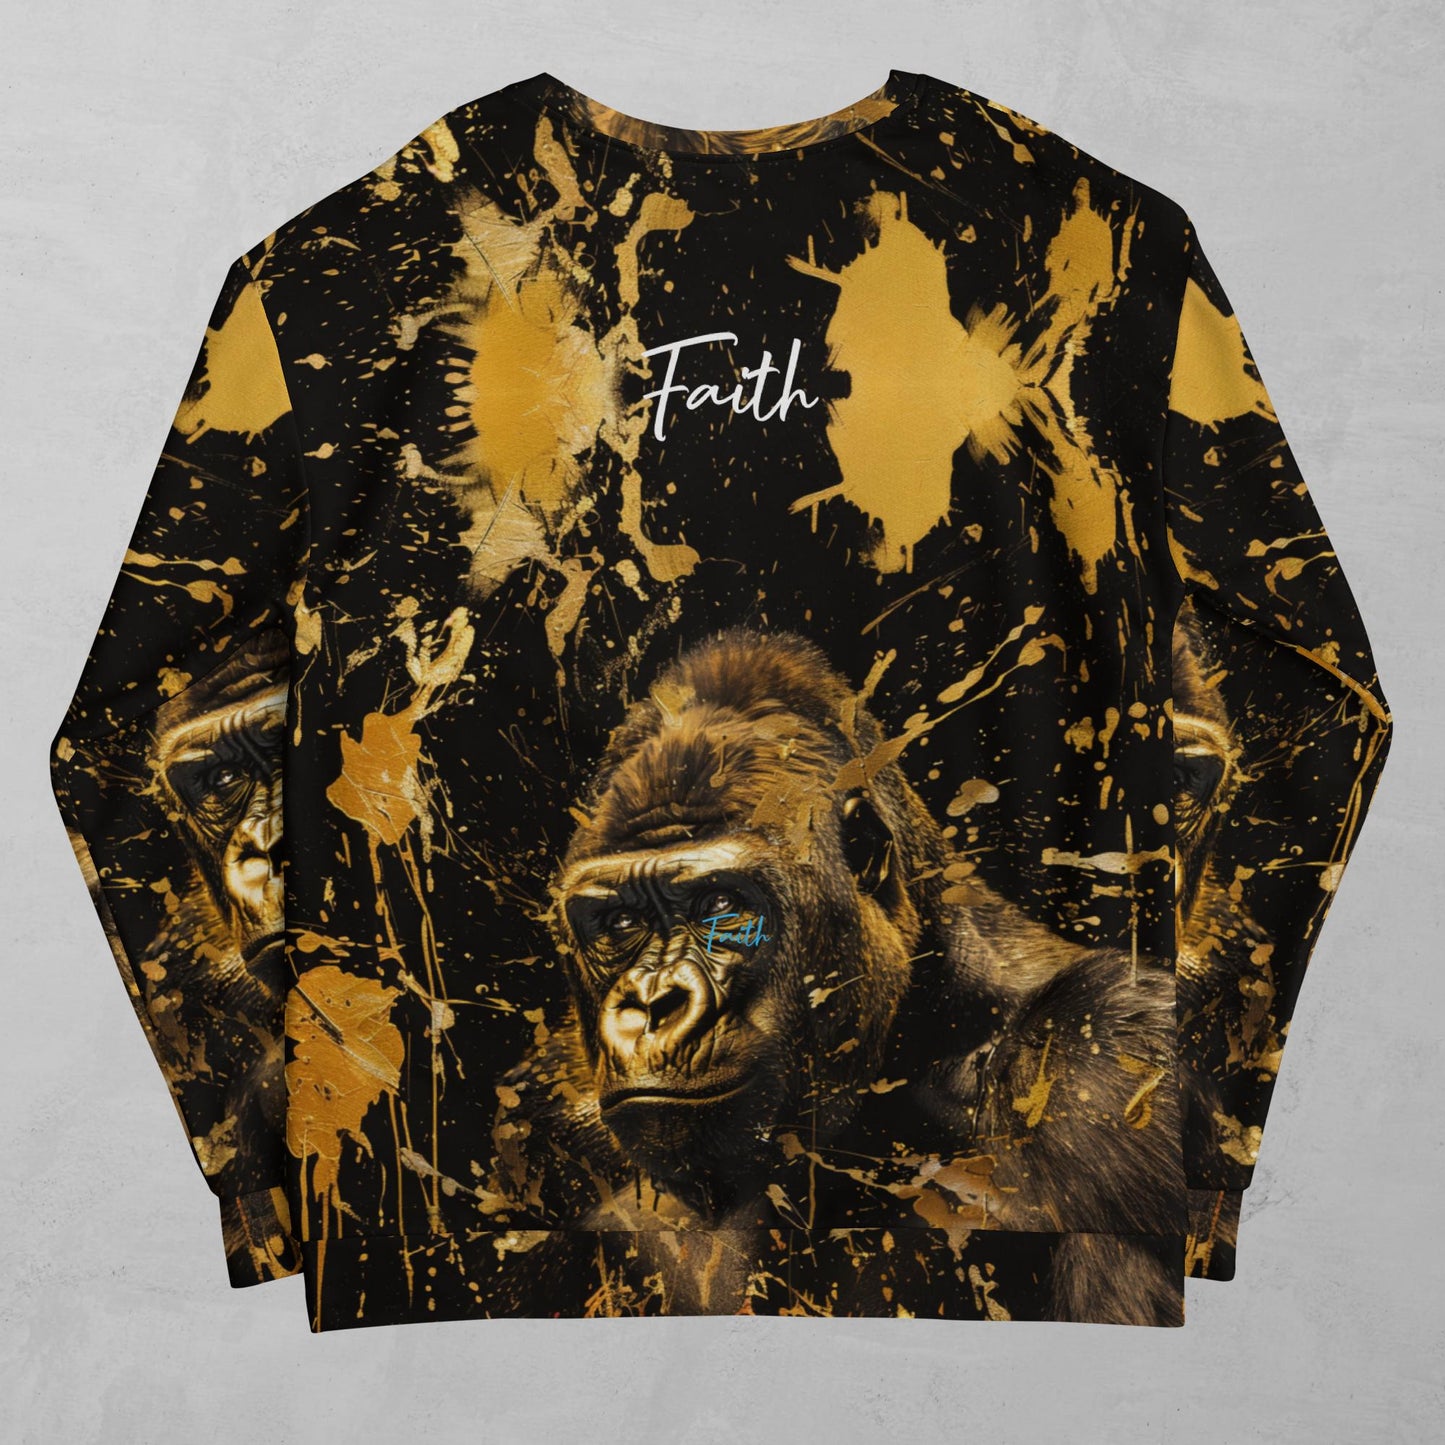 J.A Faith Gold Gorilla- Women's Sweatshirt